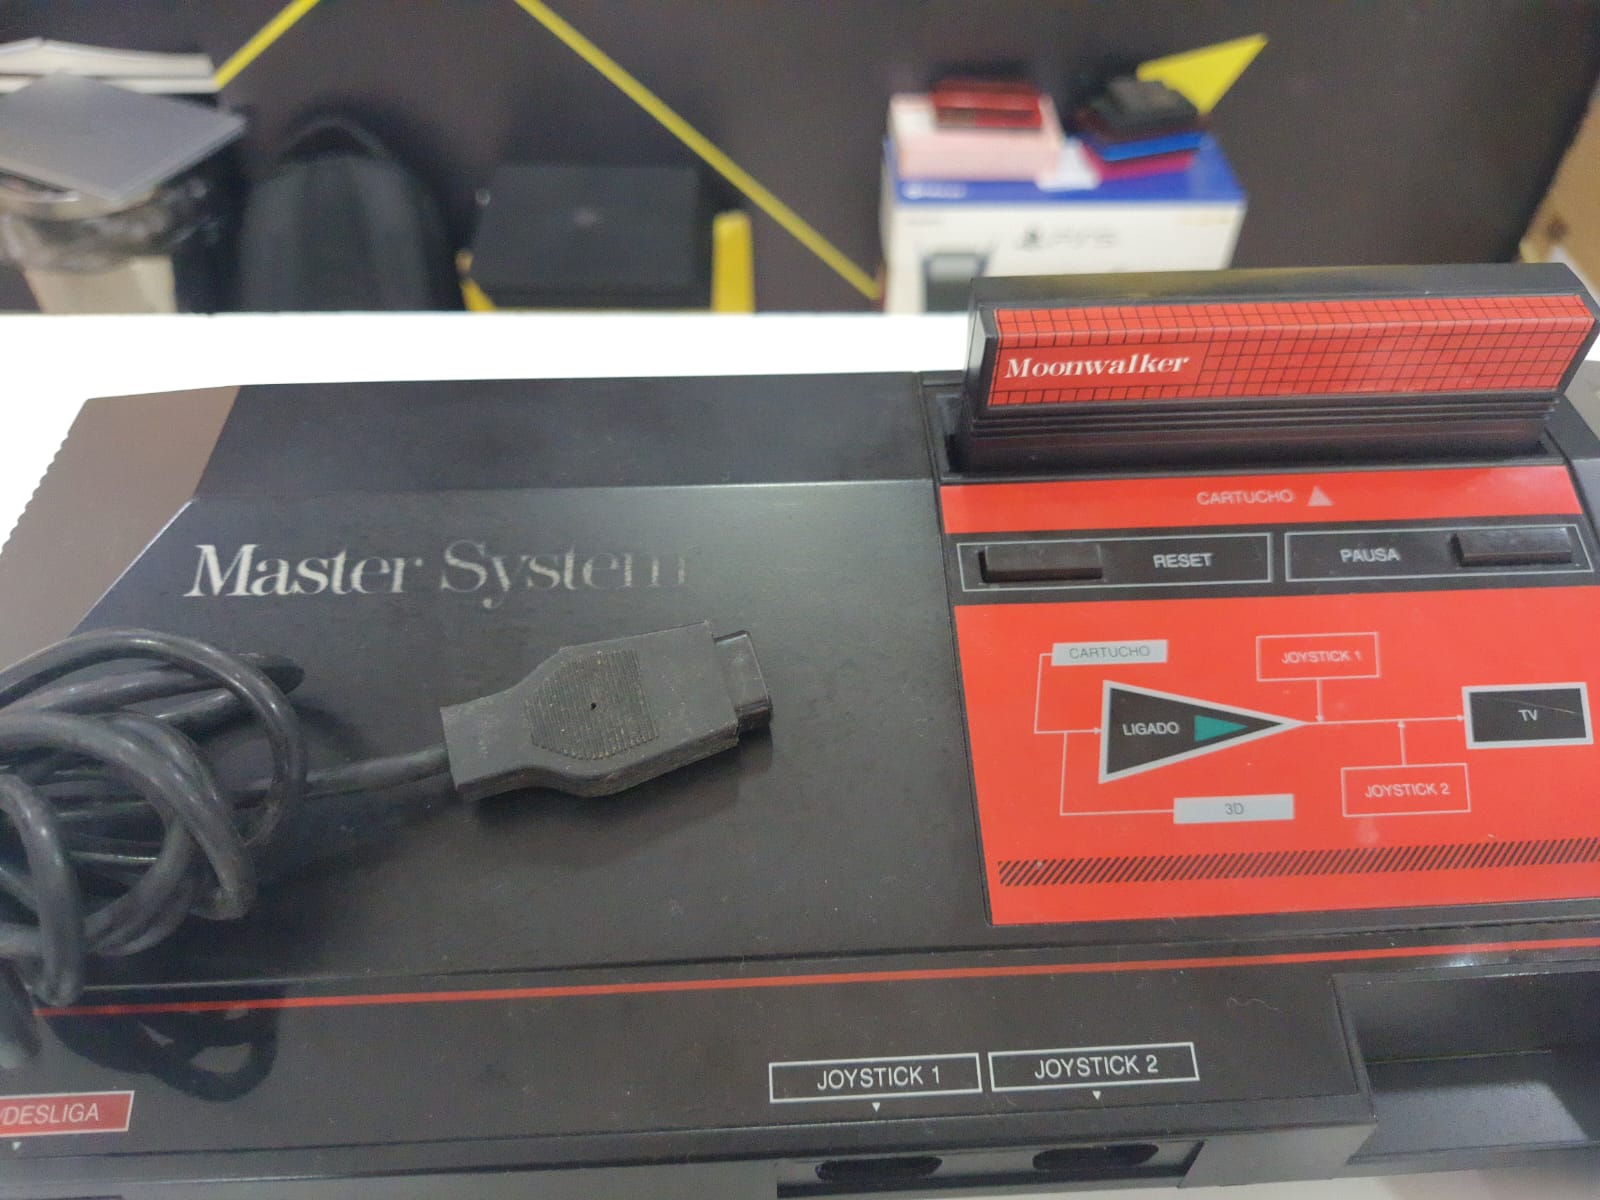 Console Master system 3 sonic funcionando perfeitamente